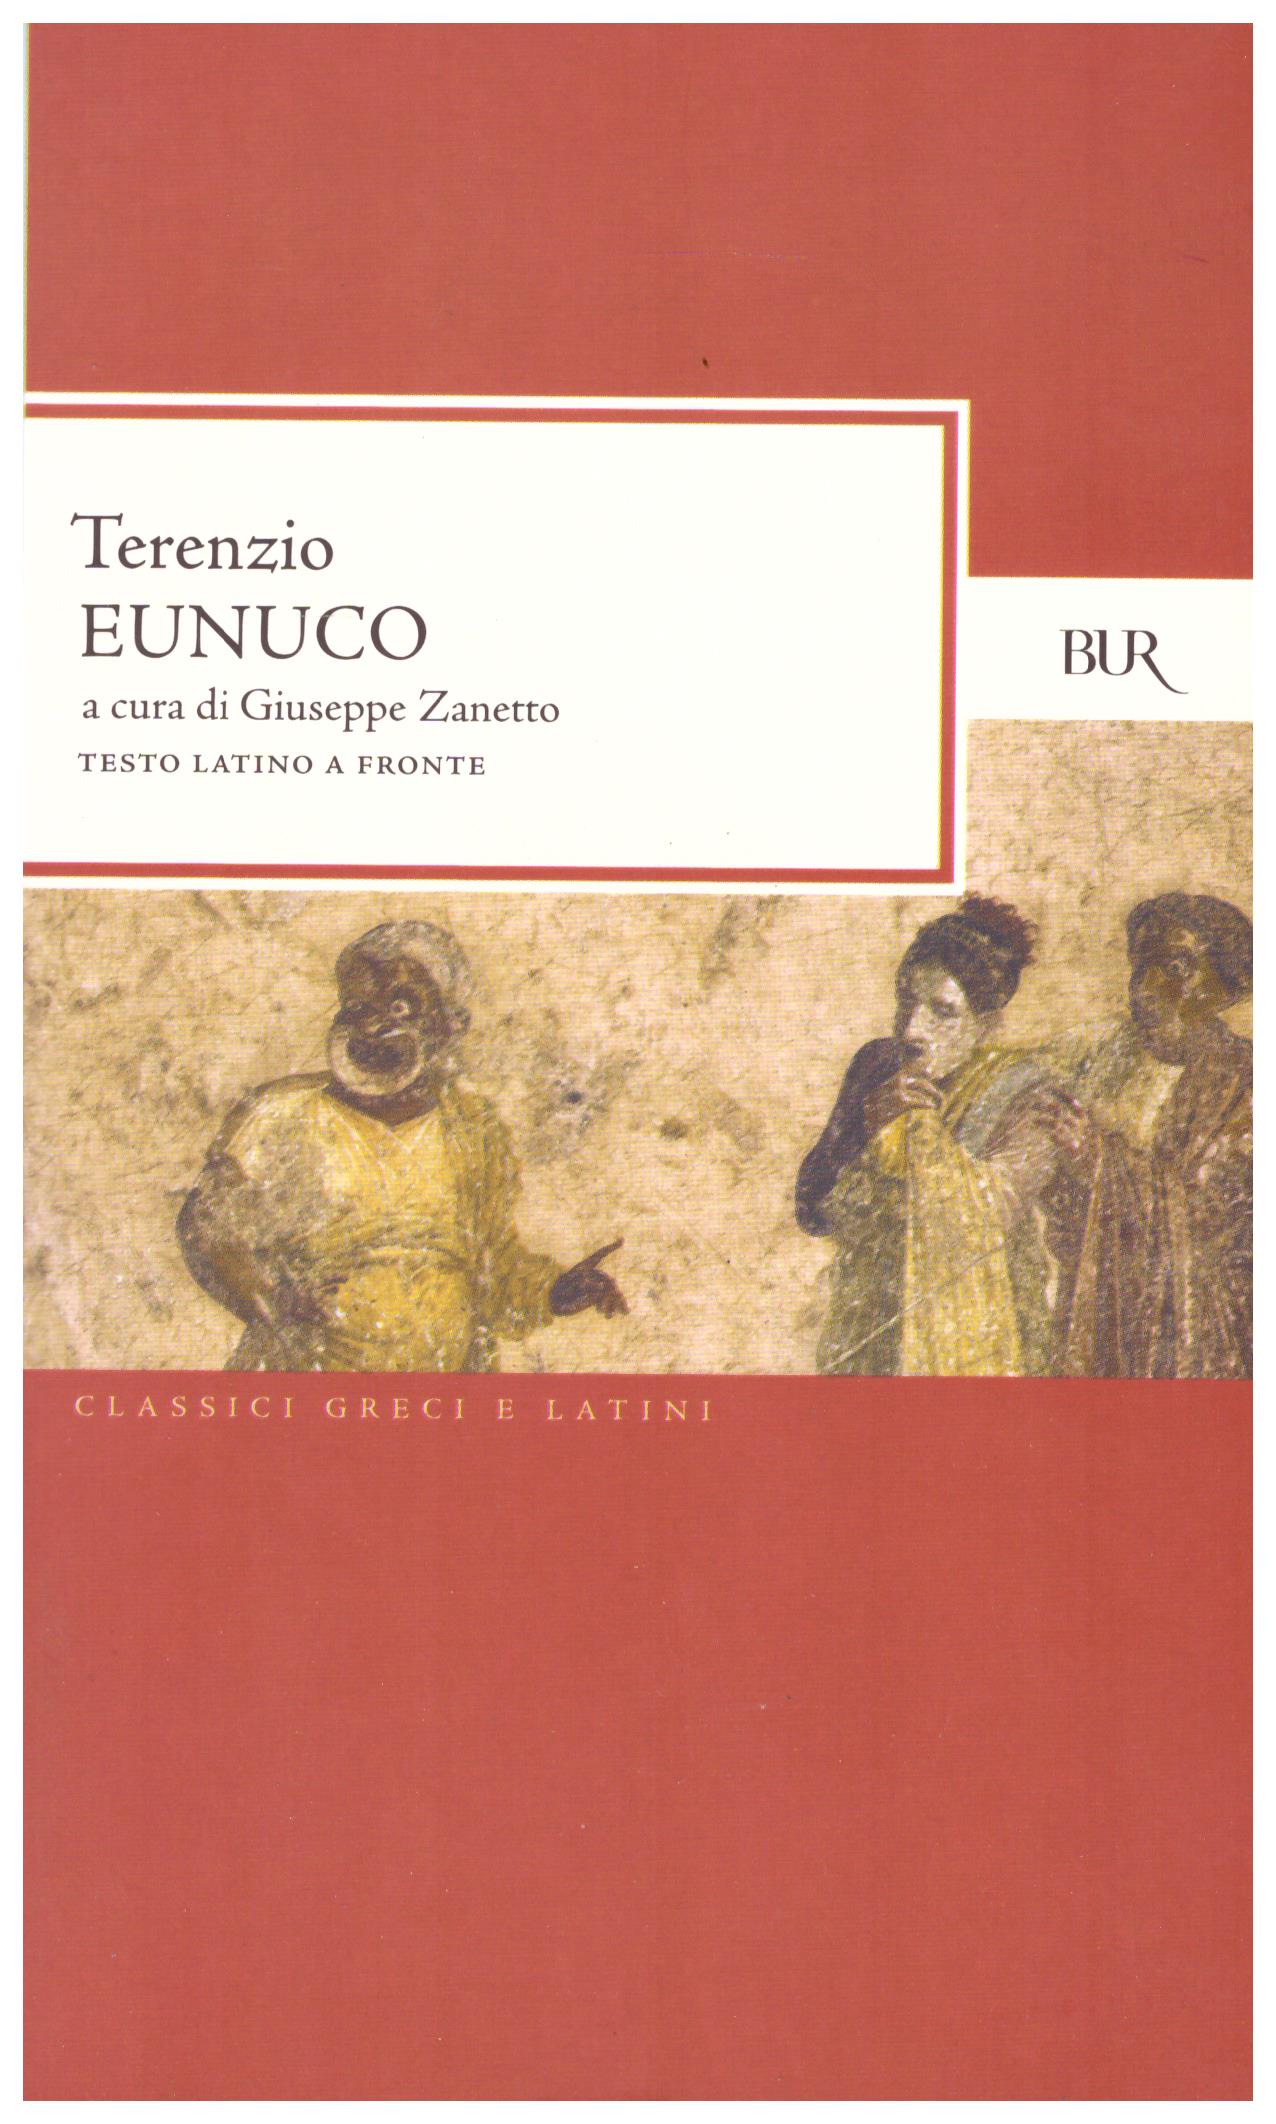 Titolo: Eunuco Autore: Terenzio Editore: Bur, 2007